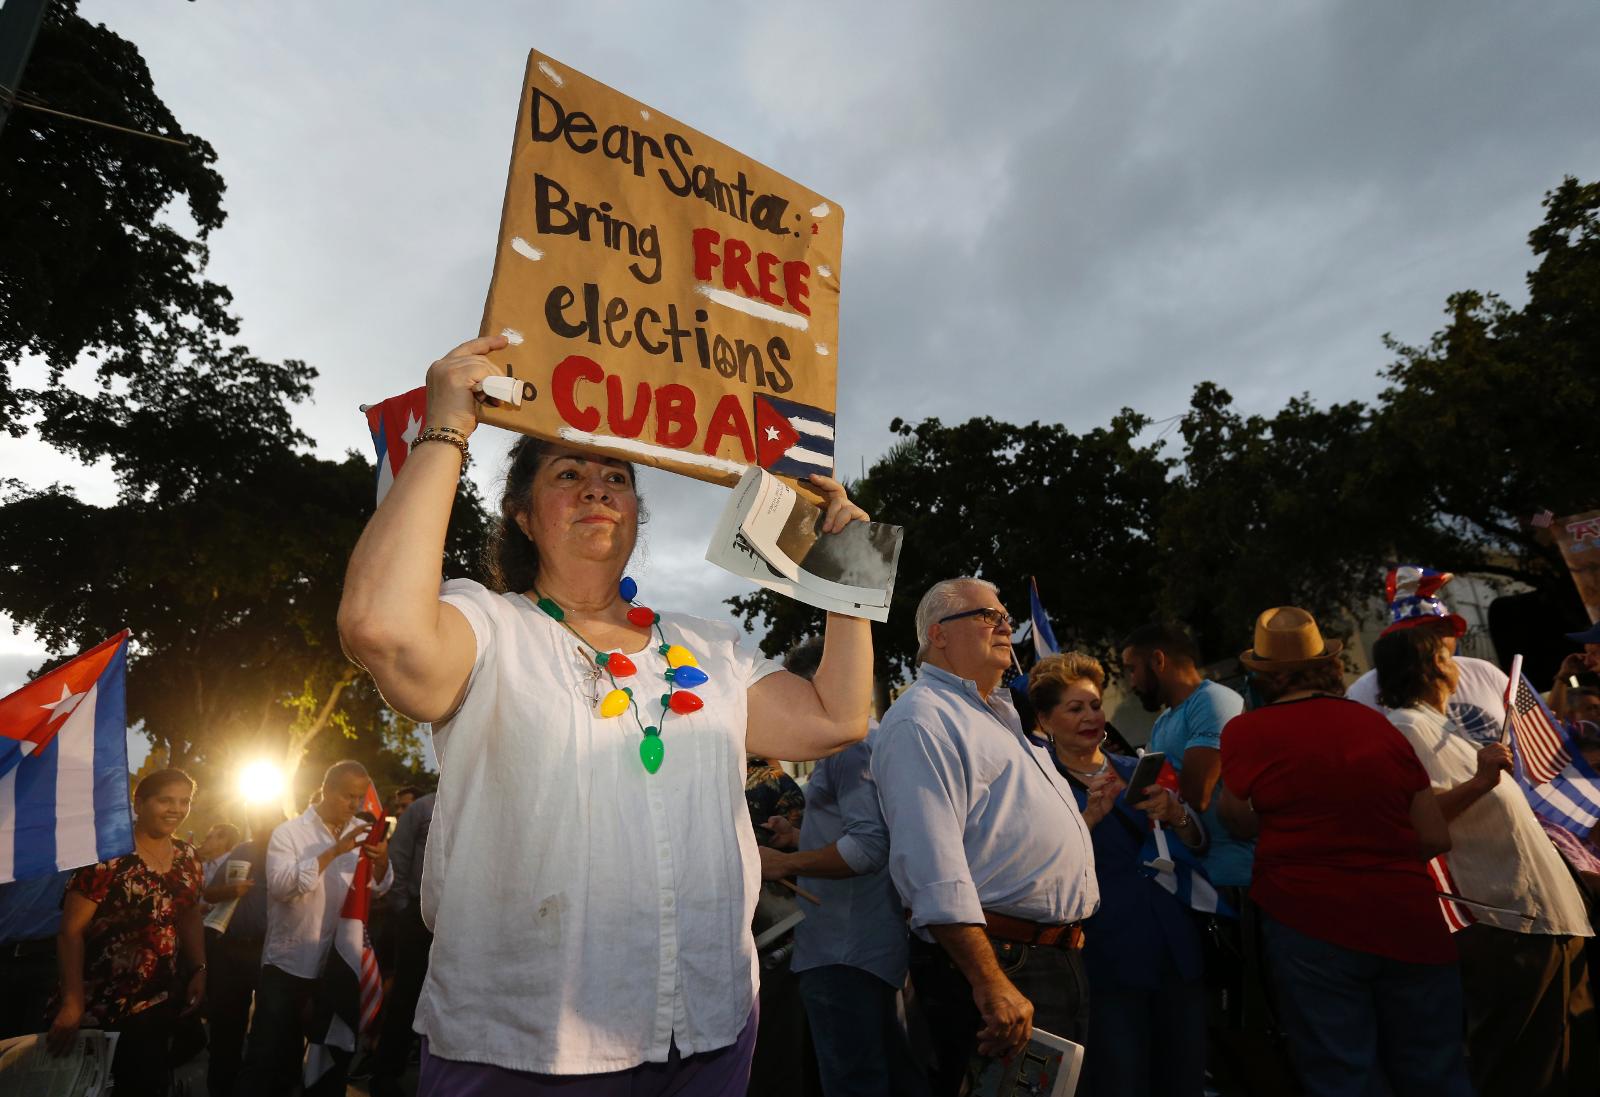 Dröm. En kvinna i området Little Havana i Miami, där hundratals kubaner i exil samlades efter Fidel Castros död, håller upp en skylt: ”Snälla jultomten, ge oss fria val på Kuba”.